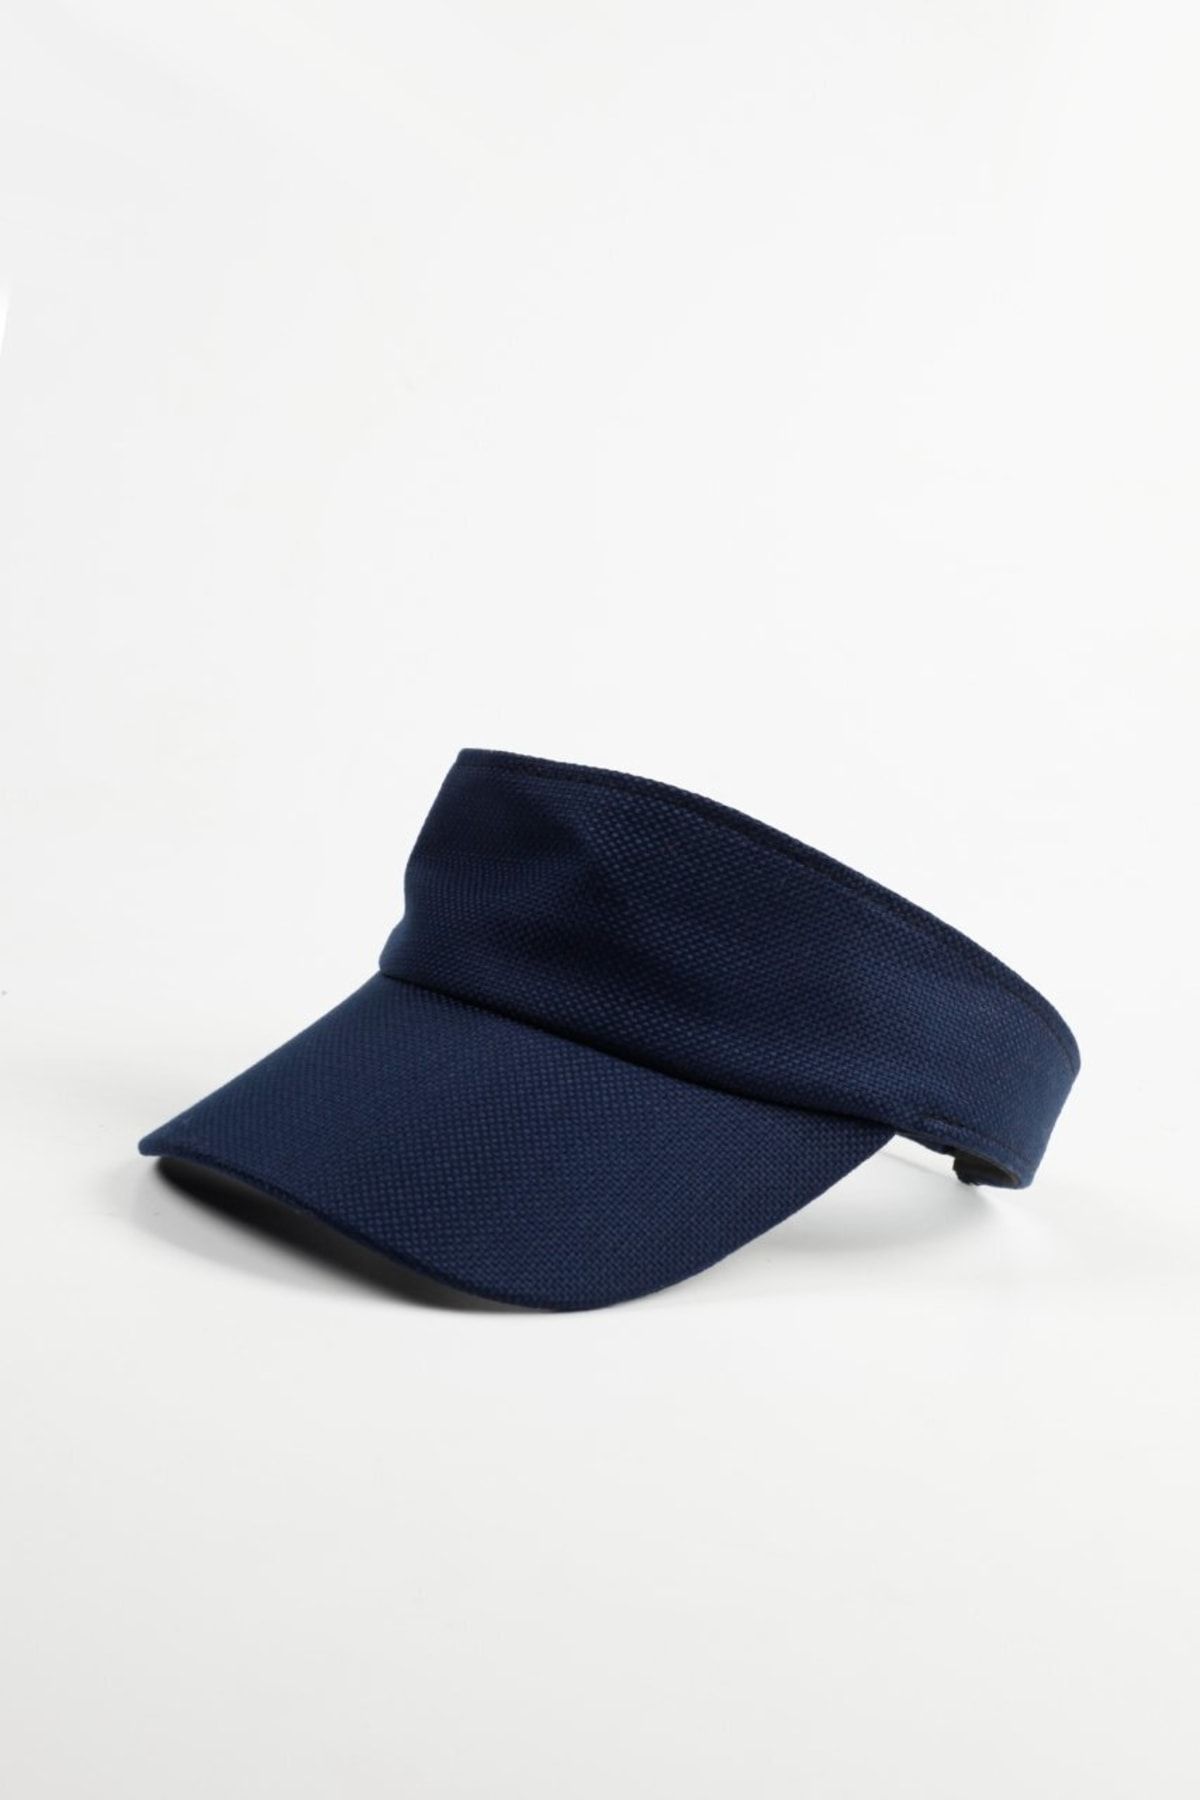 Kapin Lacivert Tenis Şapkası - Vizör Şapka